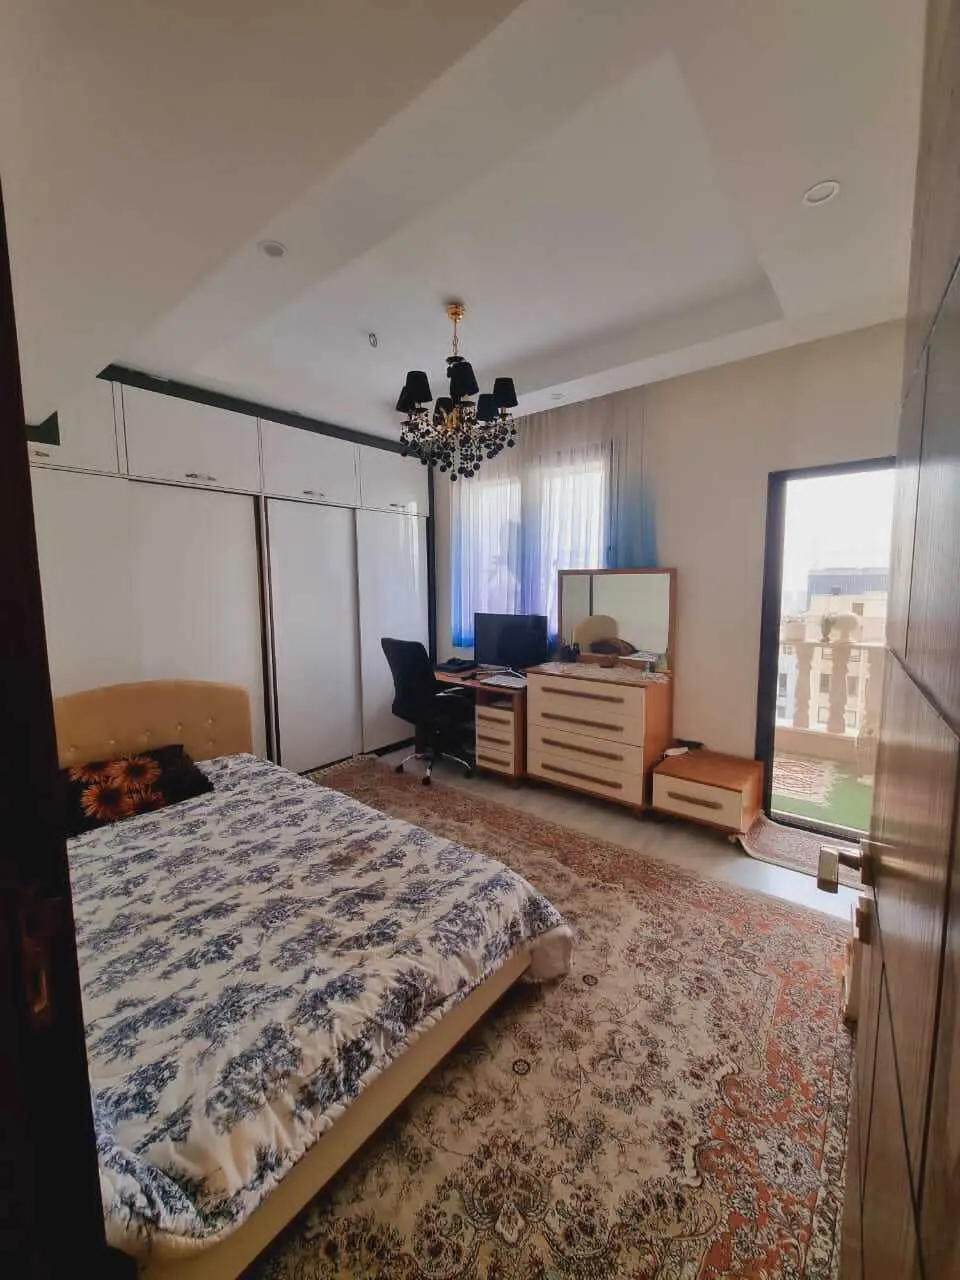  خرید آپارتمان ۲۰۰ متری  سه خواب در سعادت آباد 